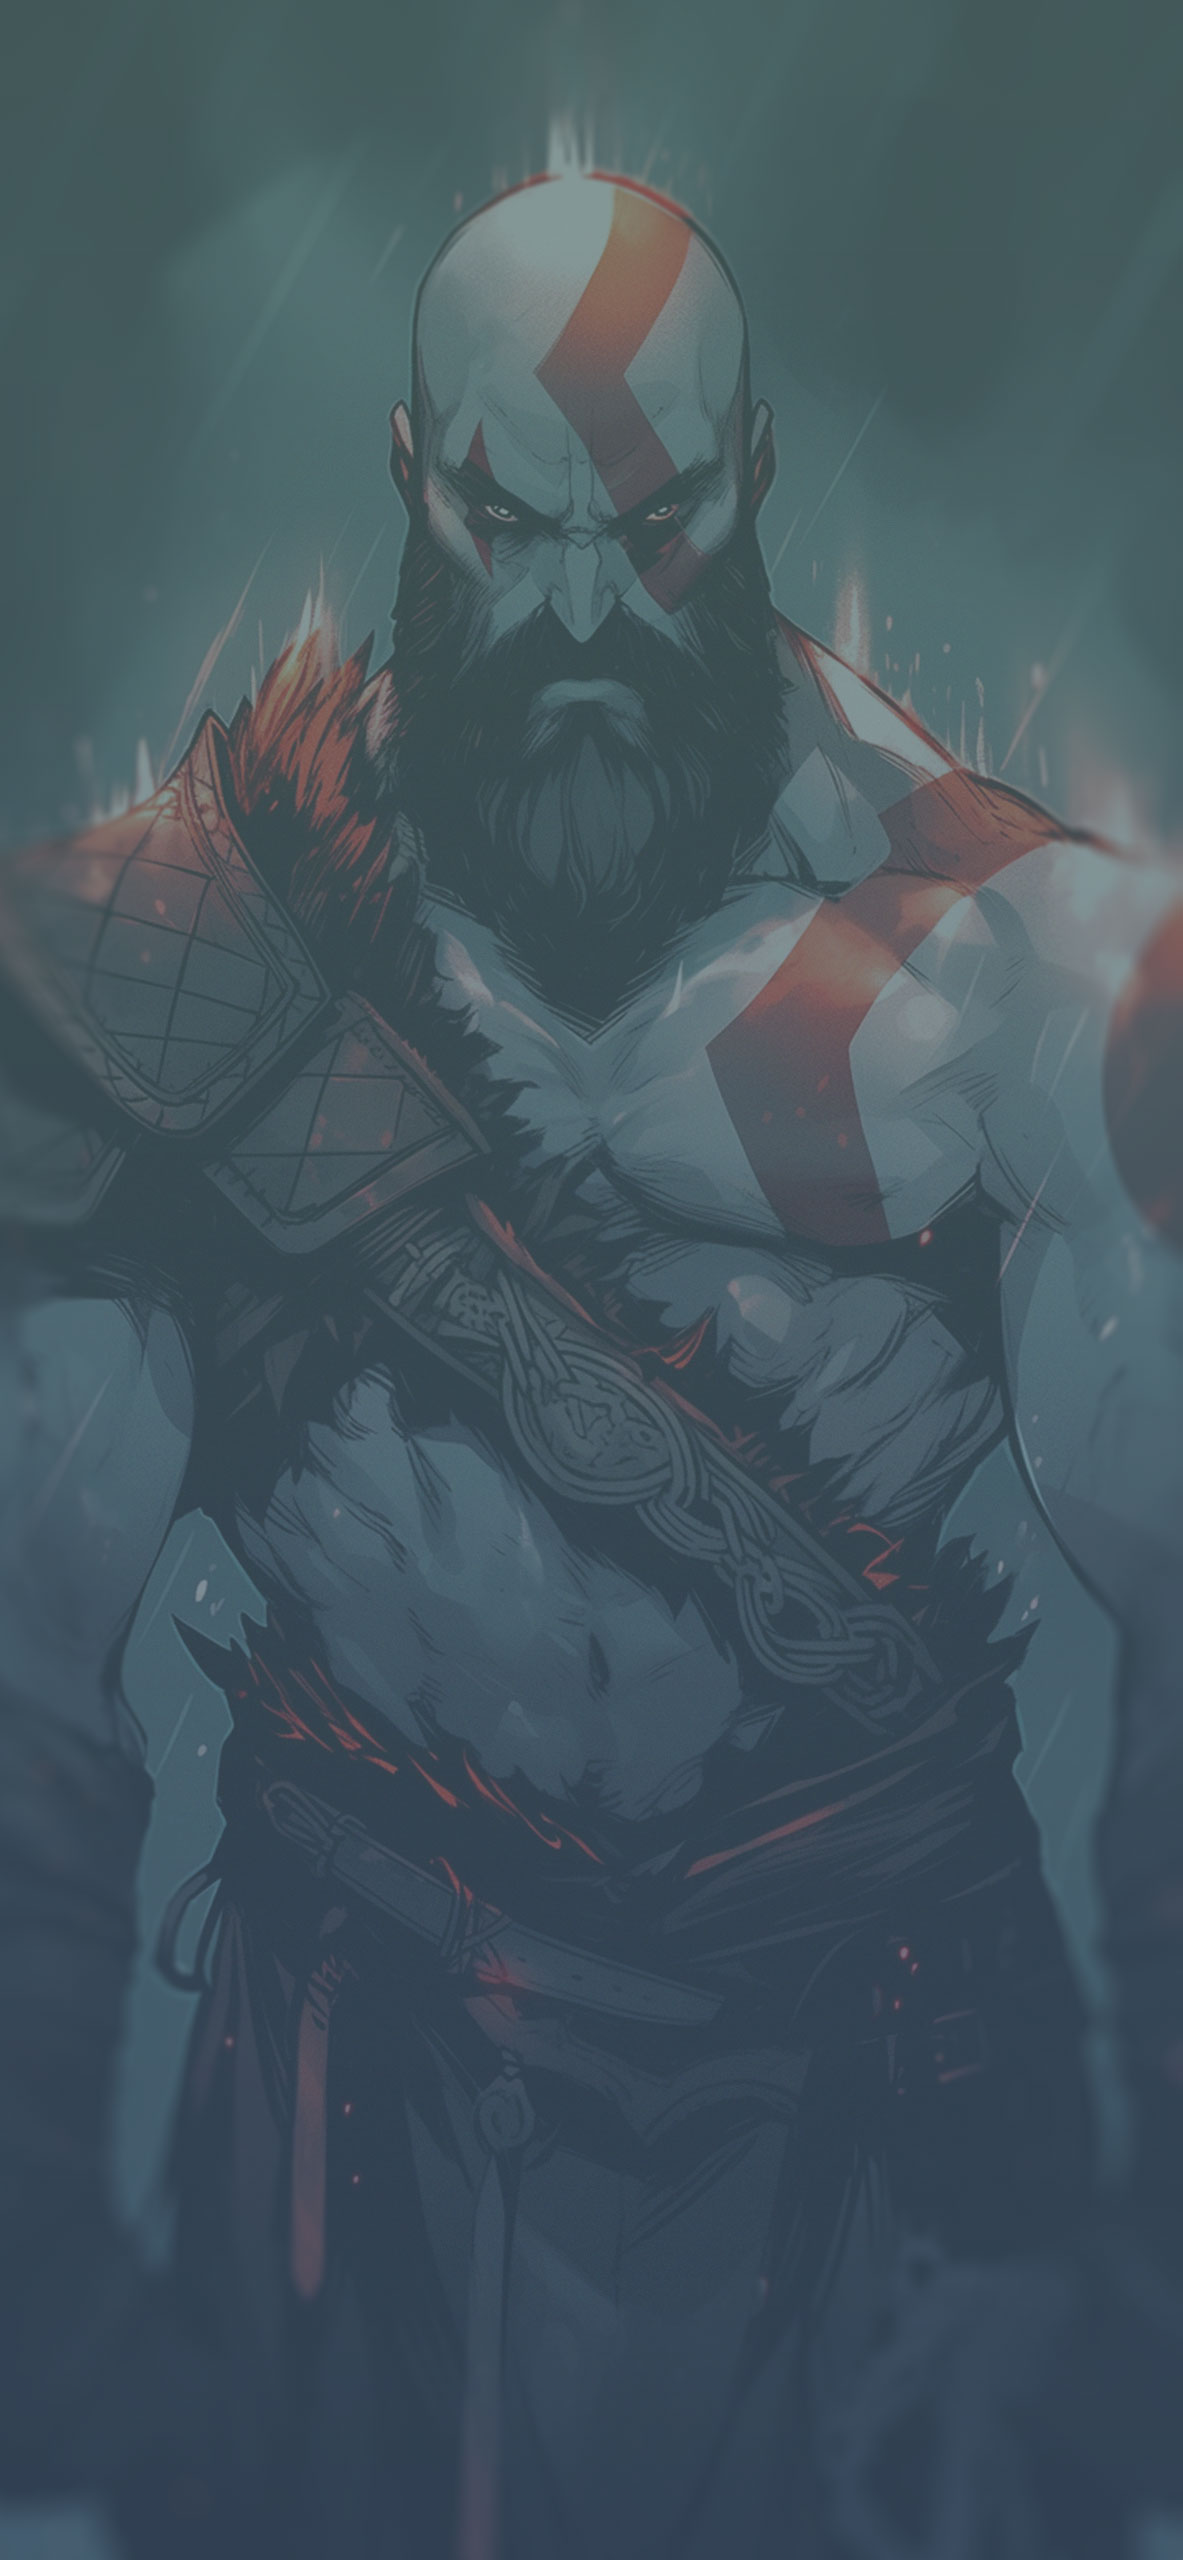 Kratos under the rain art wallpaper God of war gray wallpaper